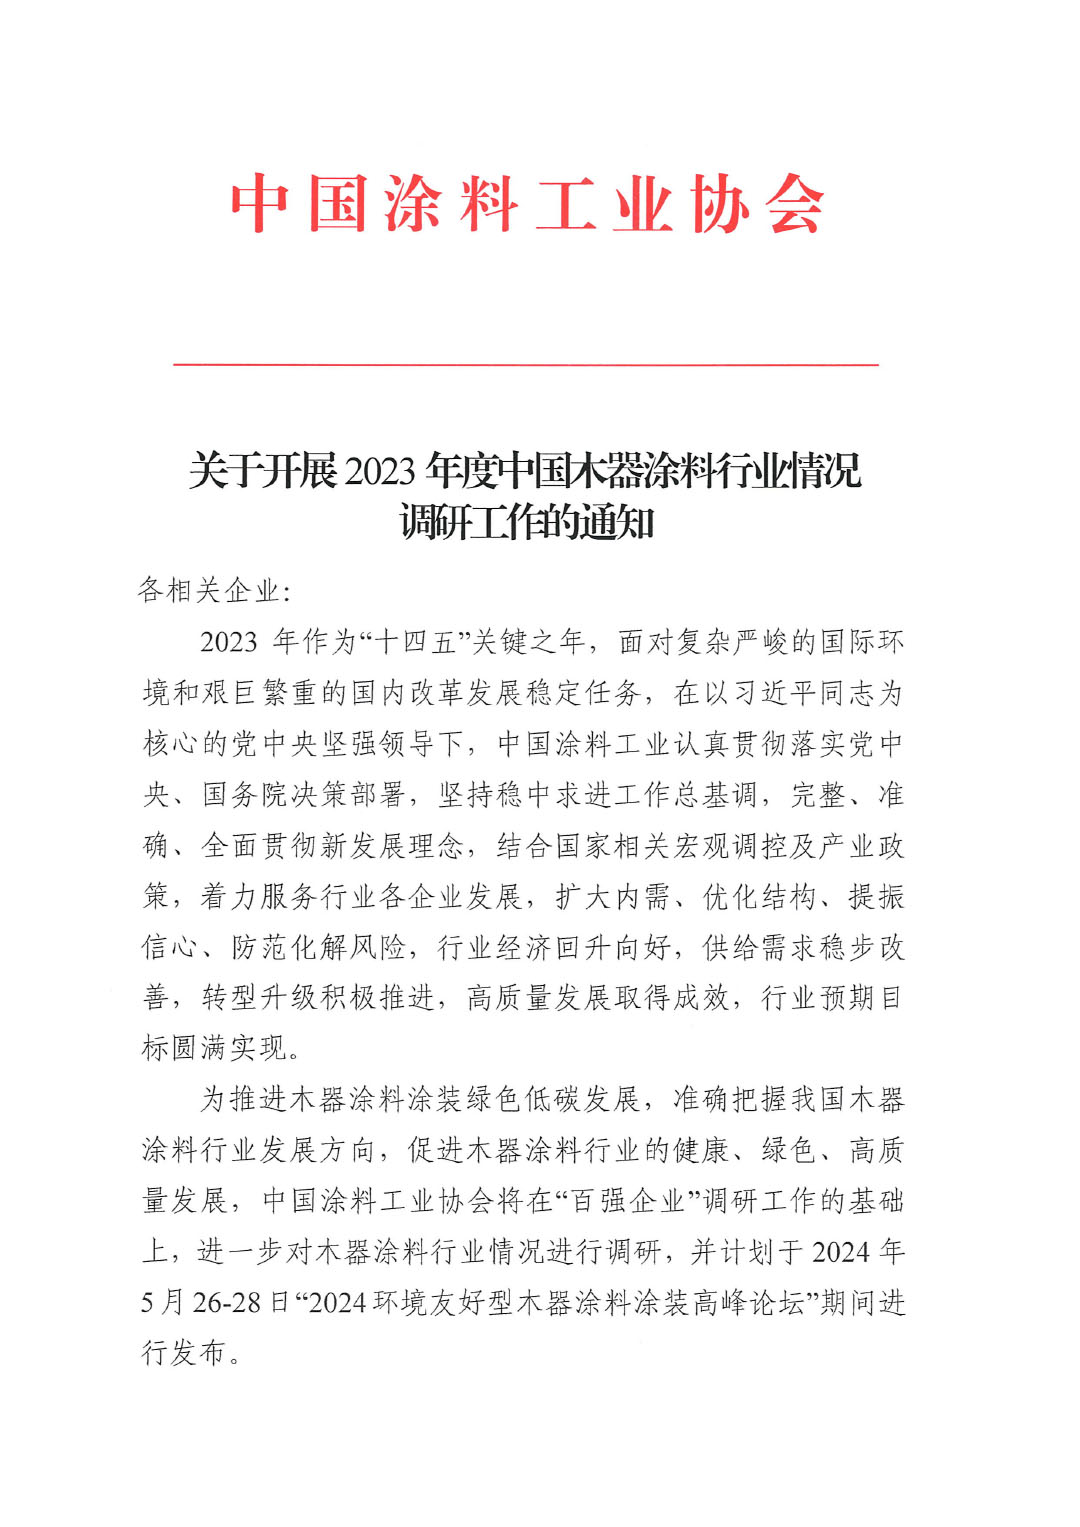 关于开展2023年度中国木器涂料行业情况的通知-1